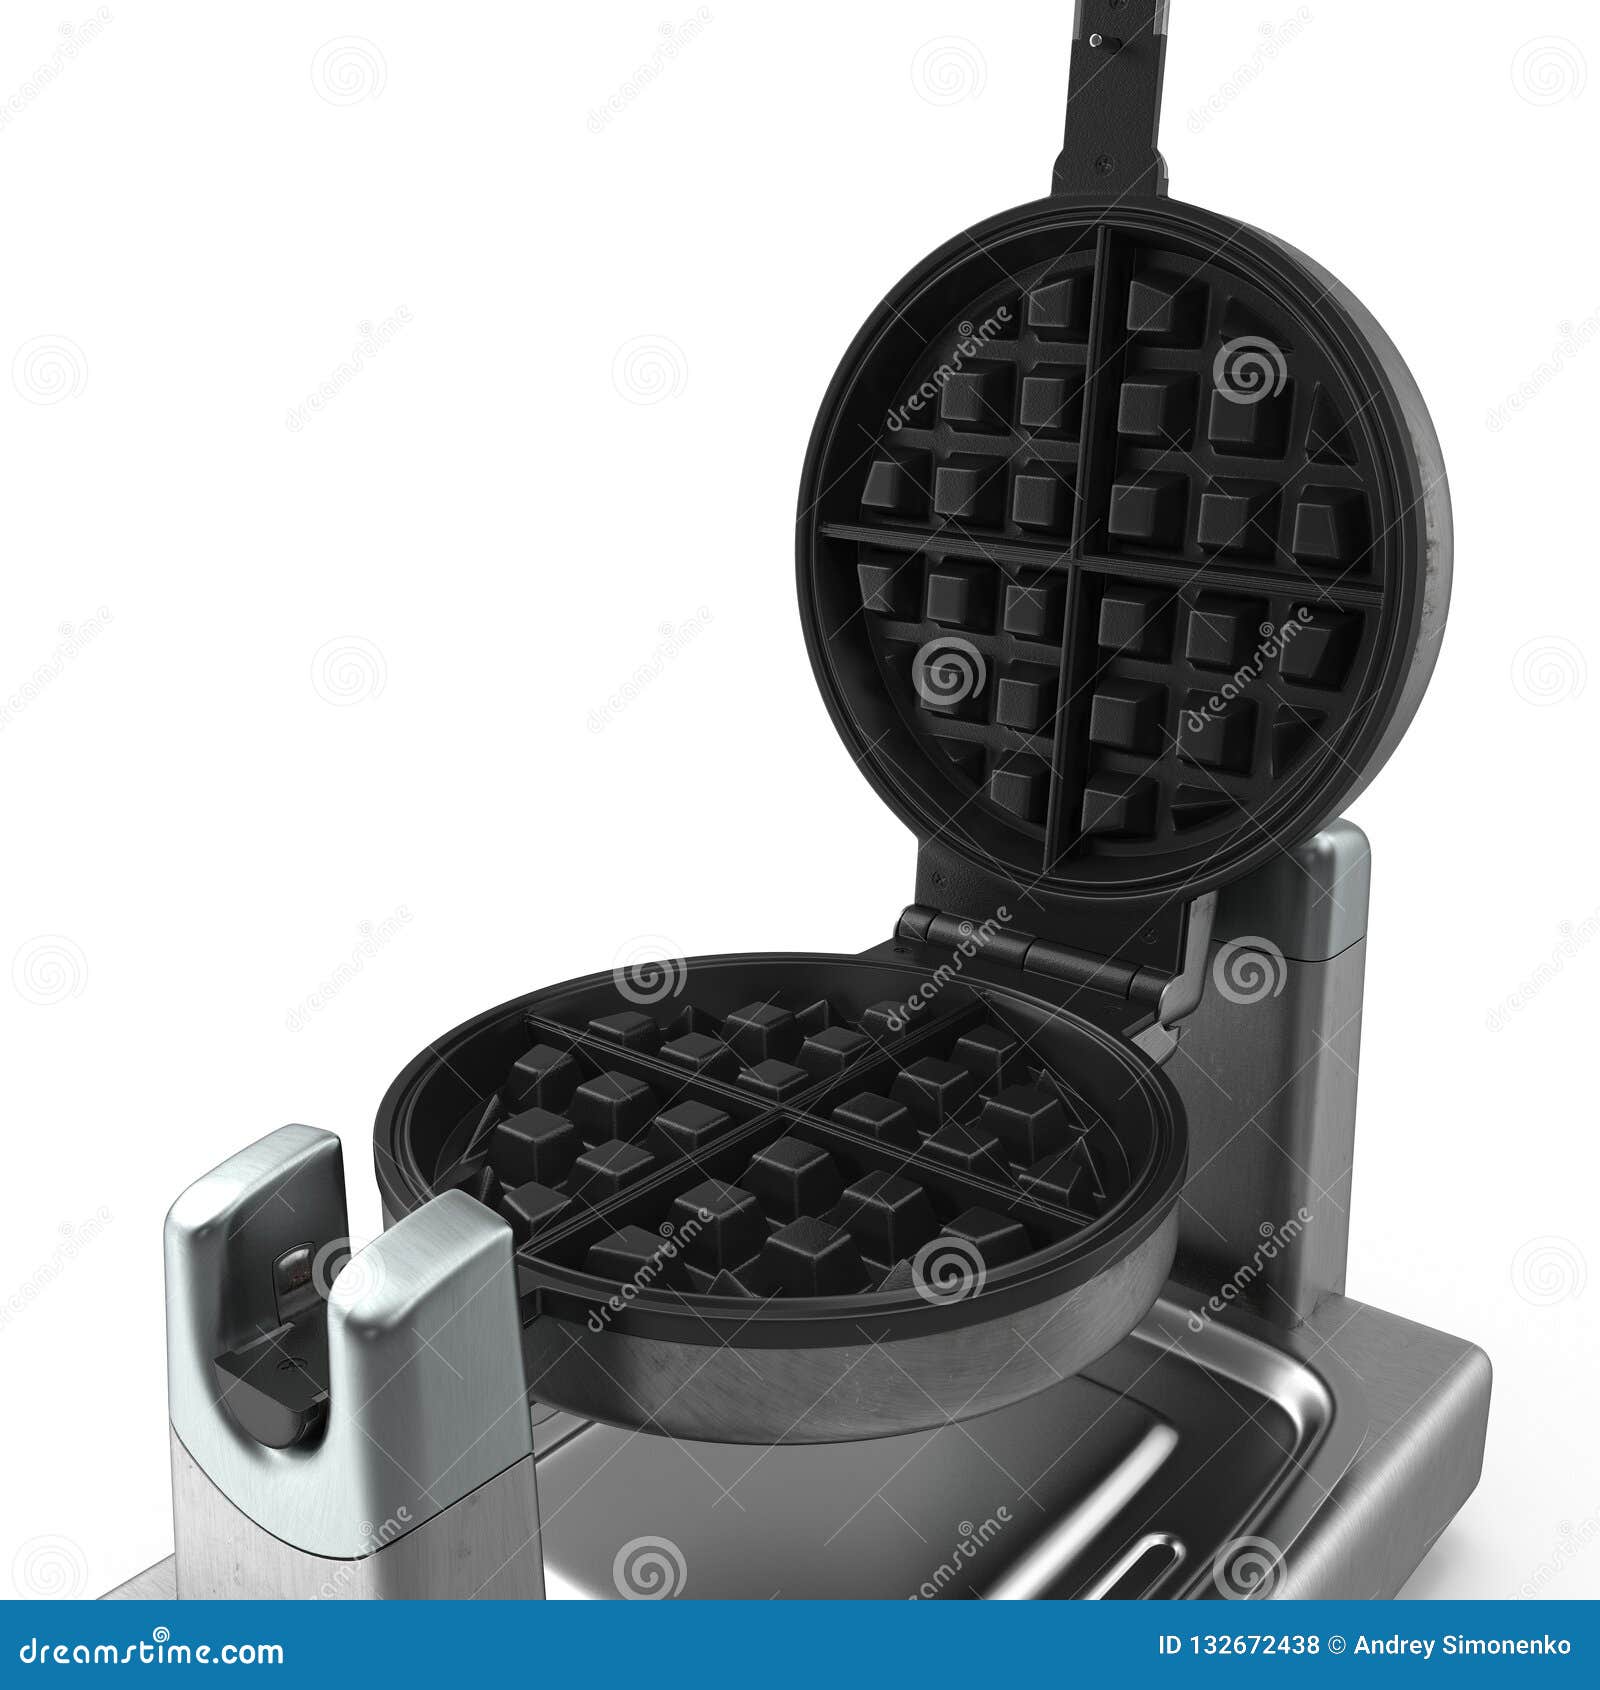 Làm bánh kẹp waffle với chiếc máy làm bánh kẹp đơn giản và tiện lợi để tạo ra những chiếc bánh ngon tuyệt vời cho cả gia đình. Với máy làm bánh kẹp waffle, bạn có thể tạo ra những loại bánh kẹp khác nhau chỉ với một chiếc máy. Hãy khám phá hình ảnh liên quan để tìm hiểu những tính năng nổi bật của máy làm bánh kẹp waffle.